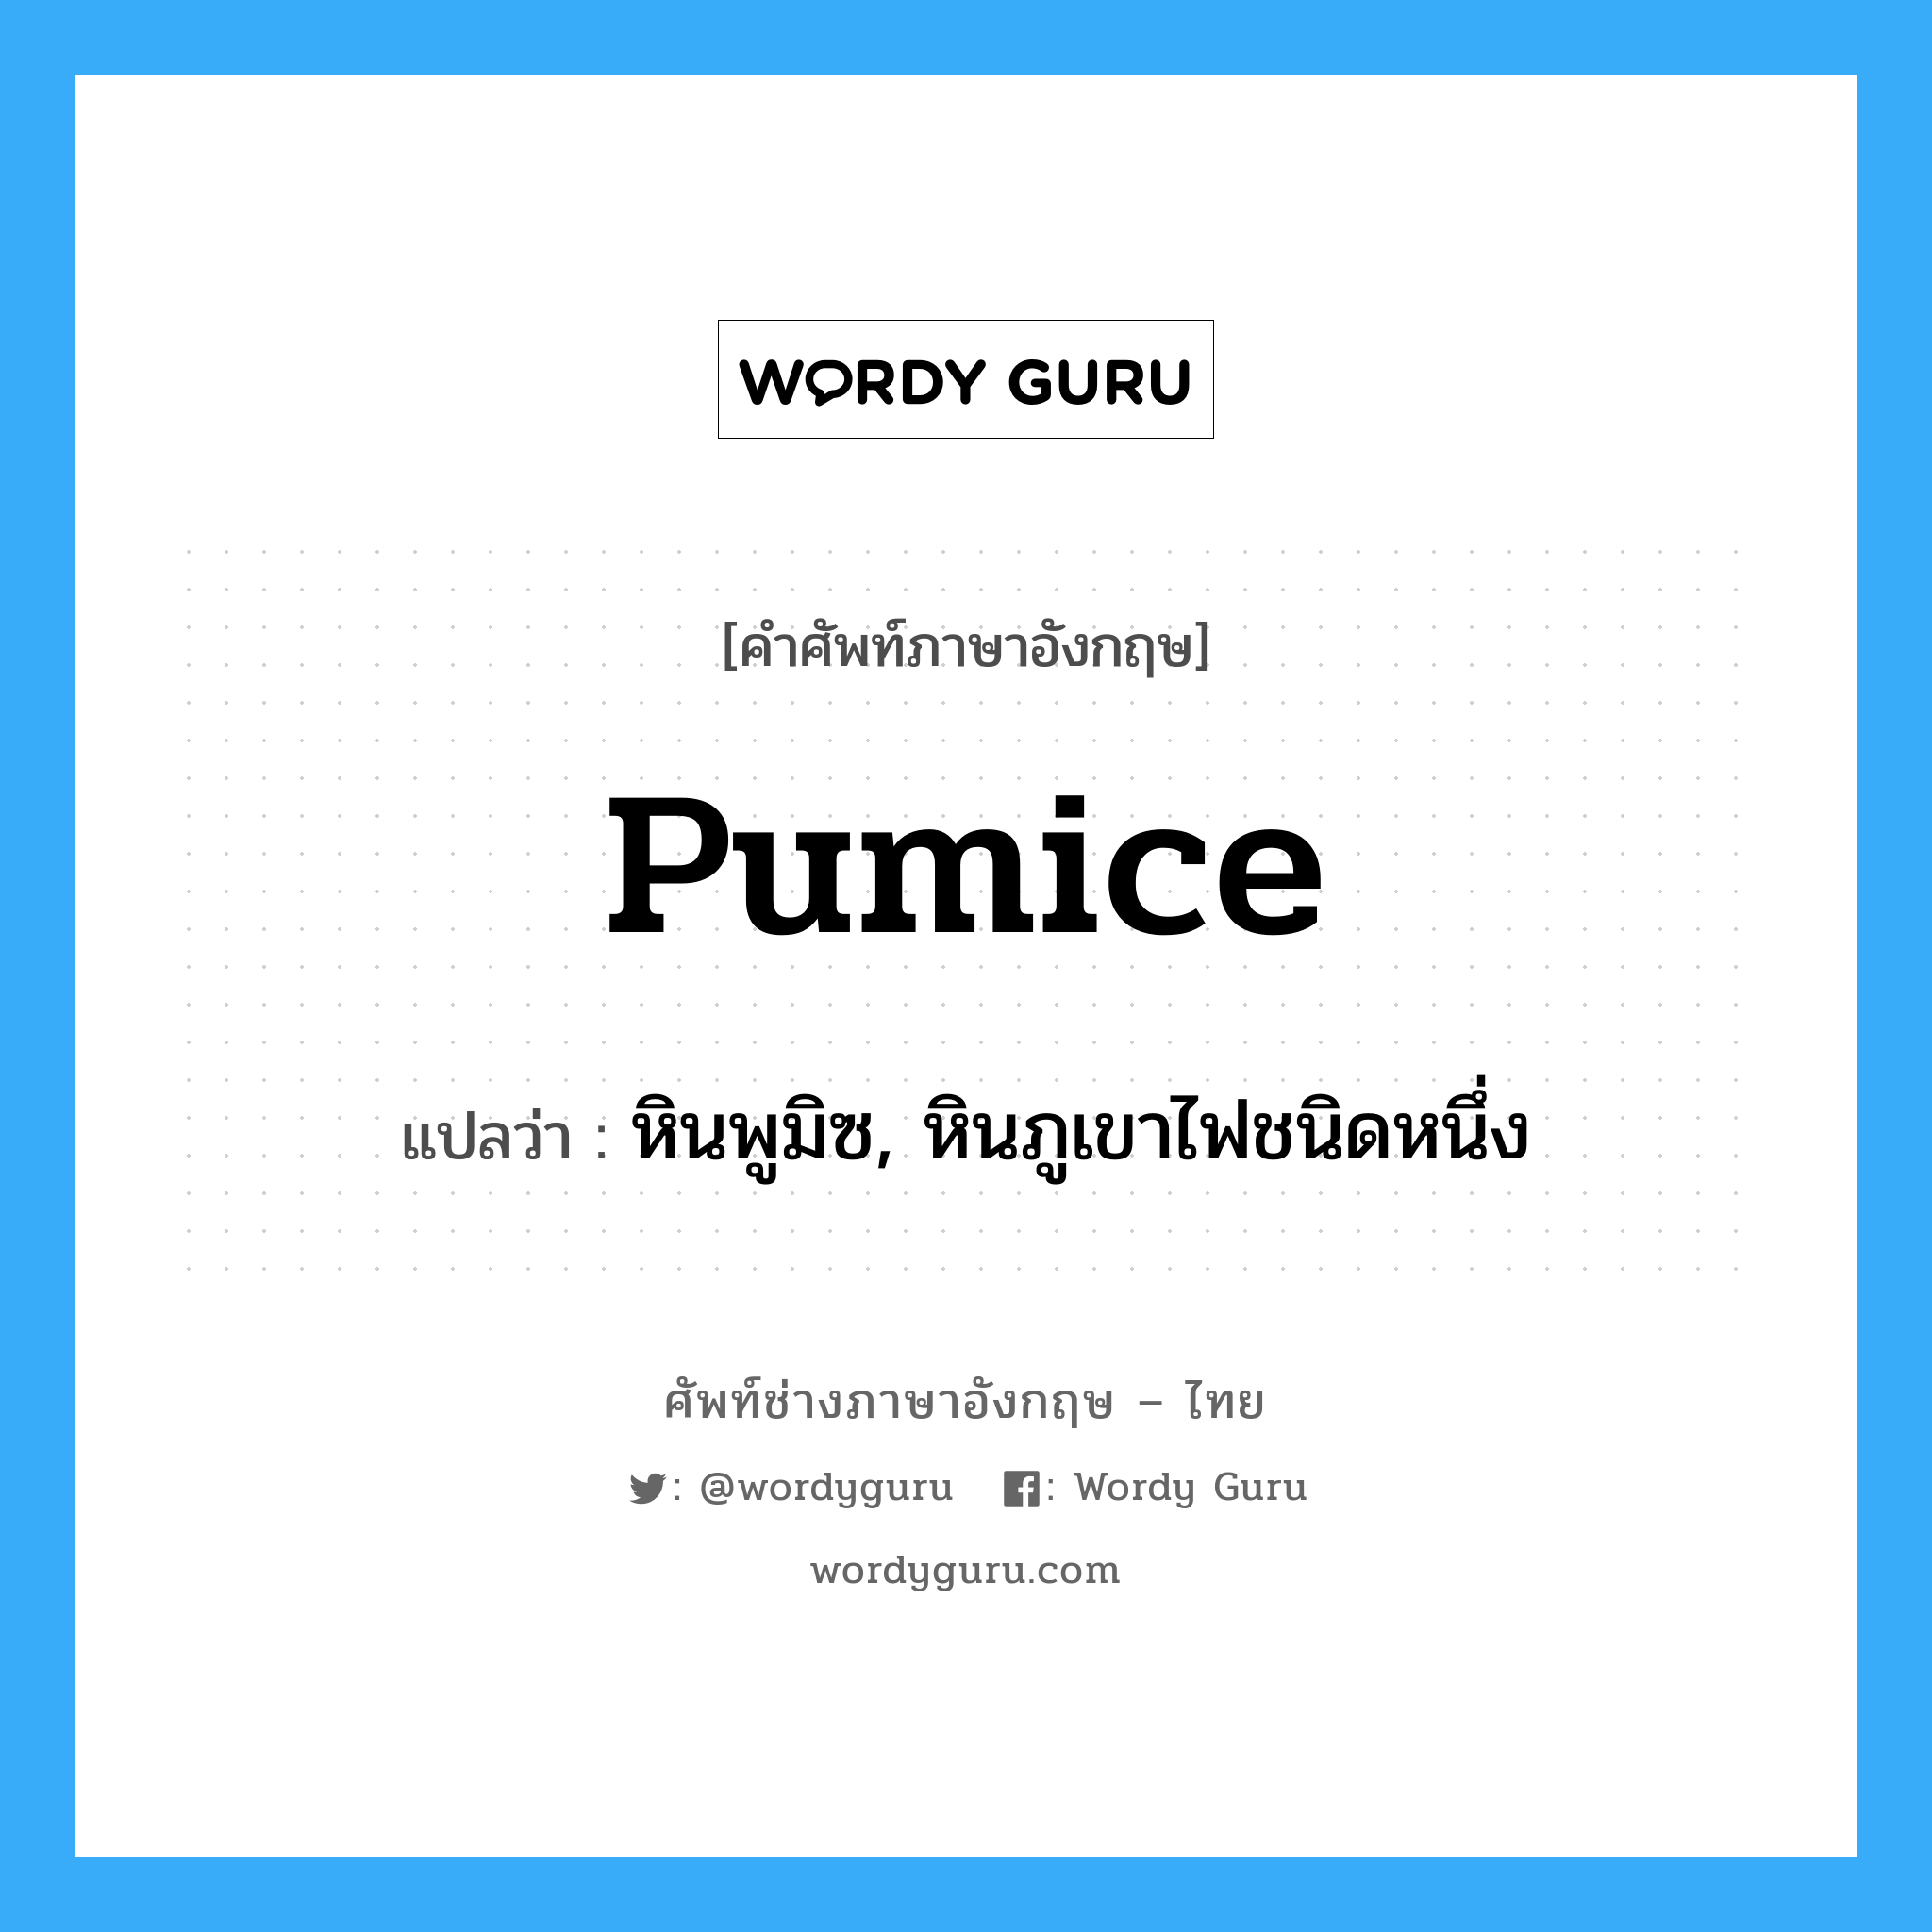 pumice แปลว่า?, คำศัพท์ช่างภาษาอังกฤษ - ไทย pumice คำศัพท์ภาษาอังกฤษ pumice แปลว่า หินพูมิซ, หินภูเขาไฟชนิดหนึ่ง